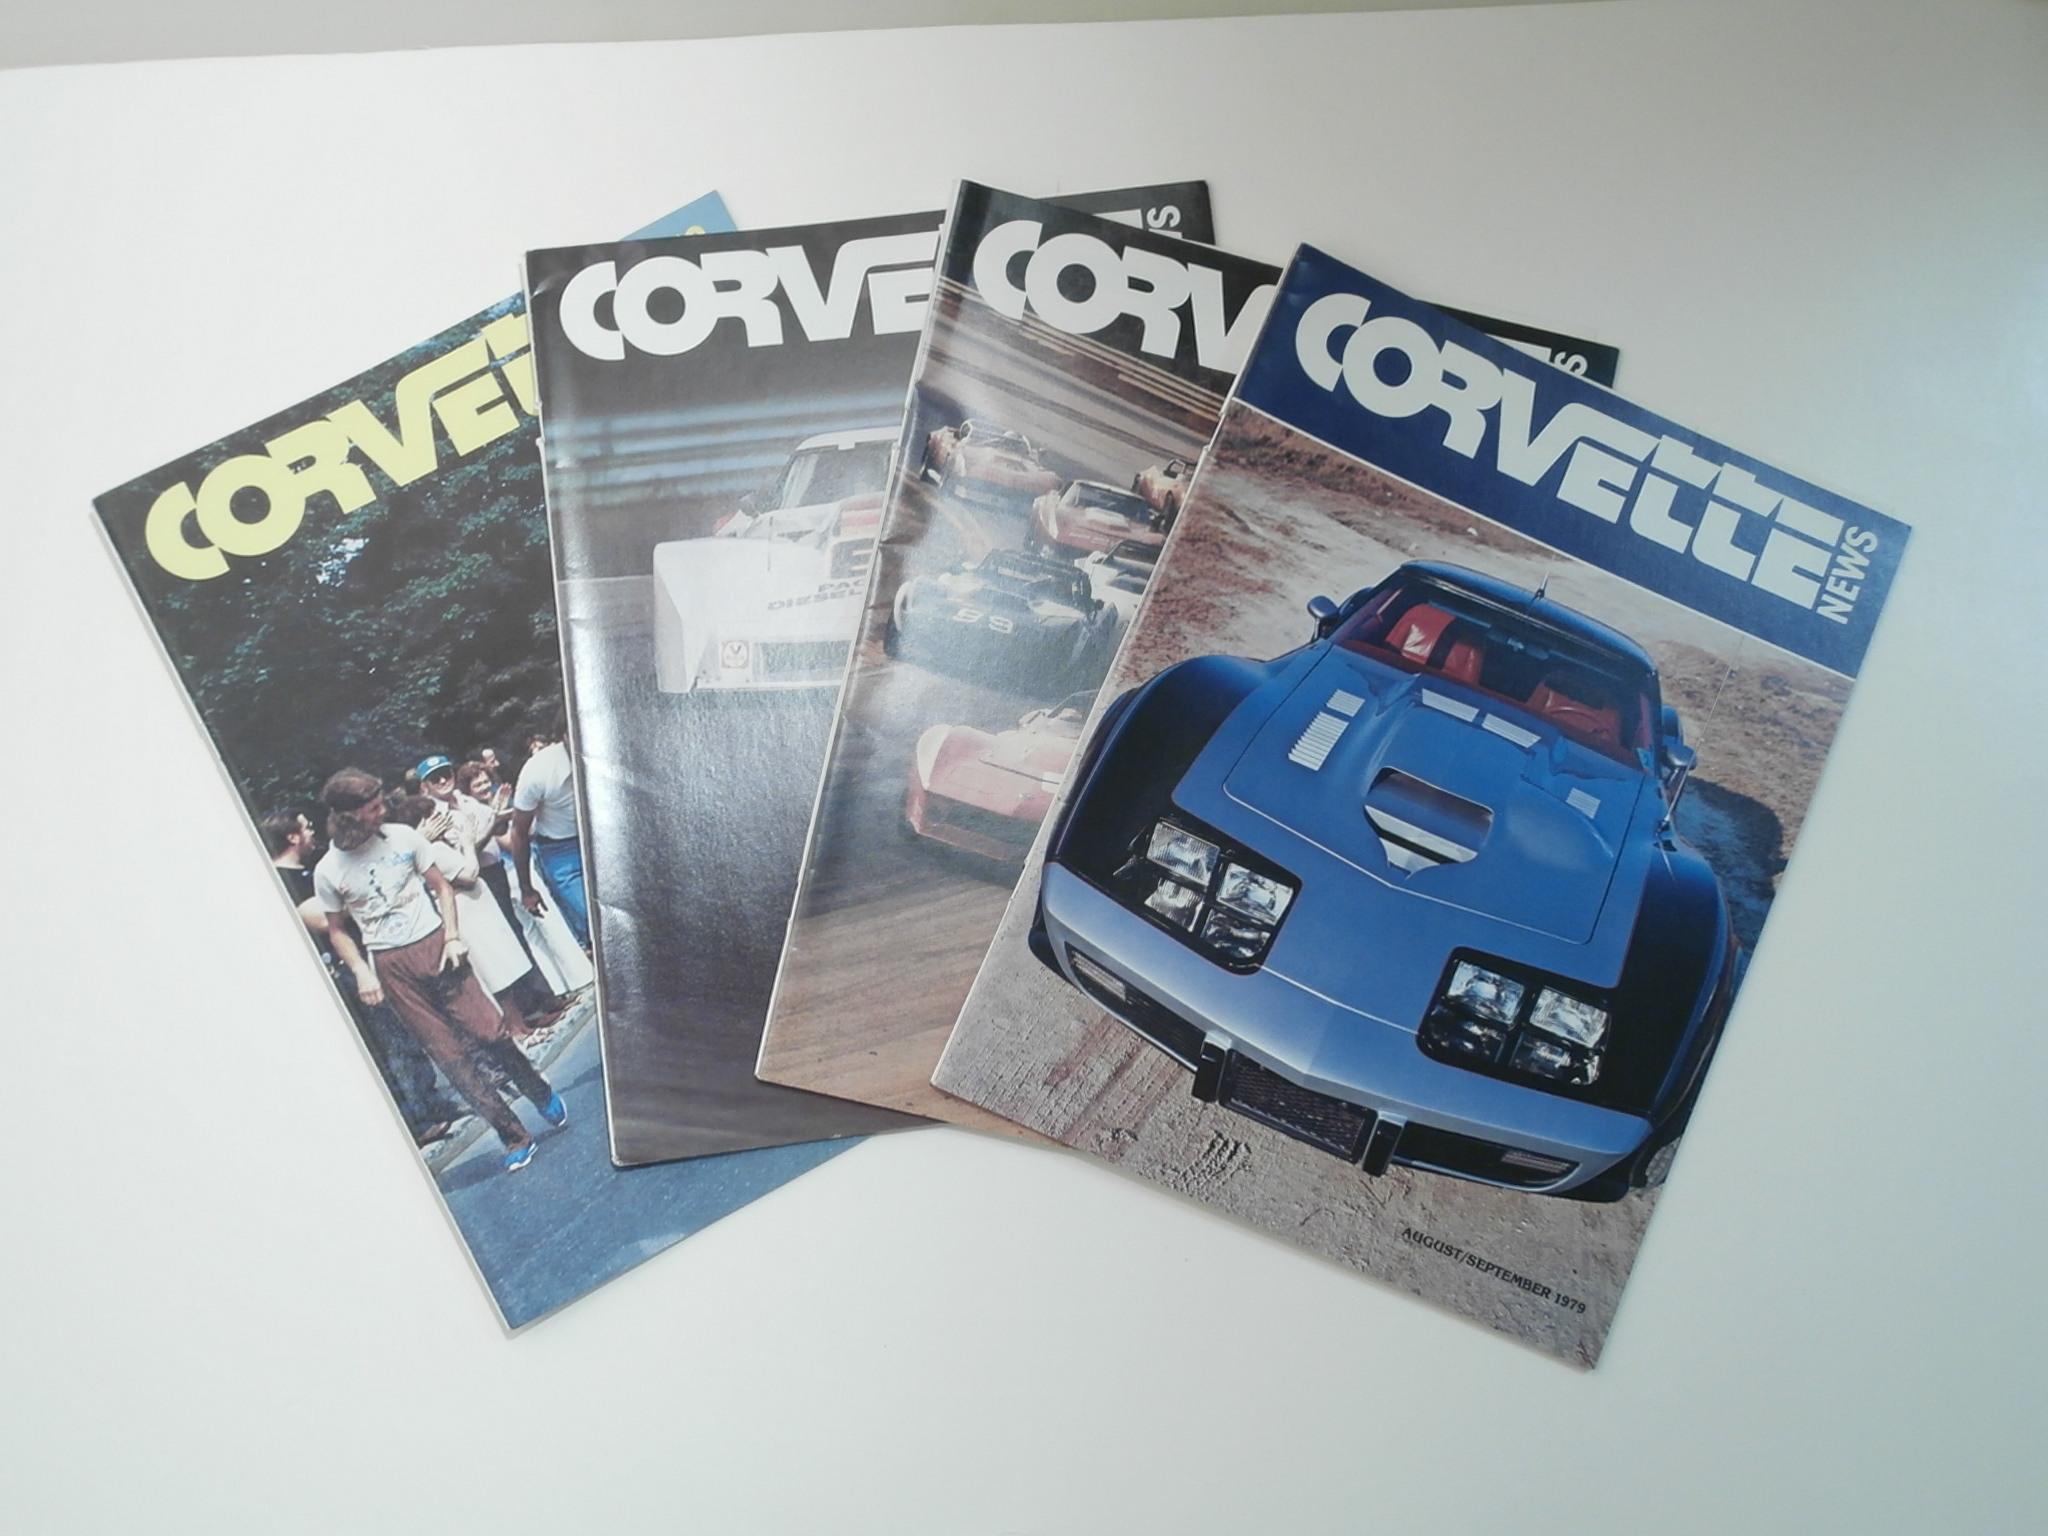 Corvette News Magazine Volume 22 4 Issues